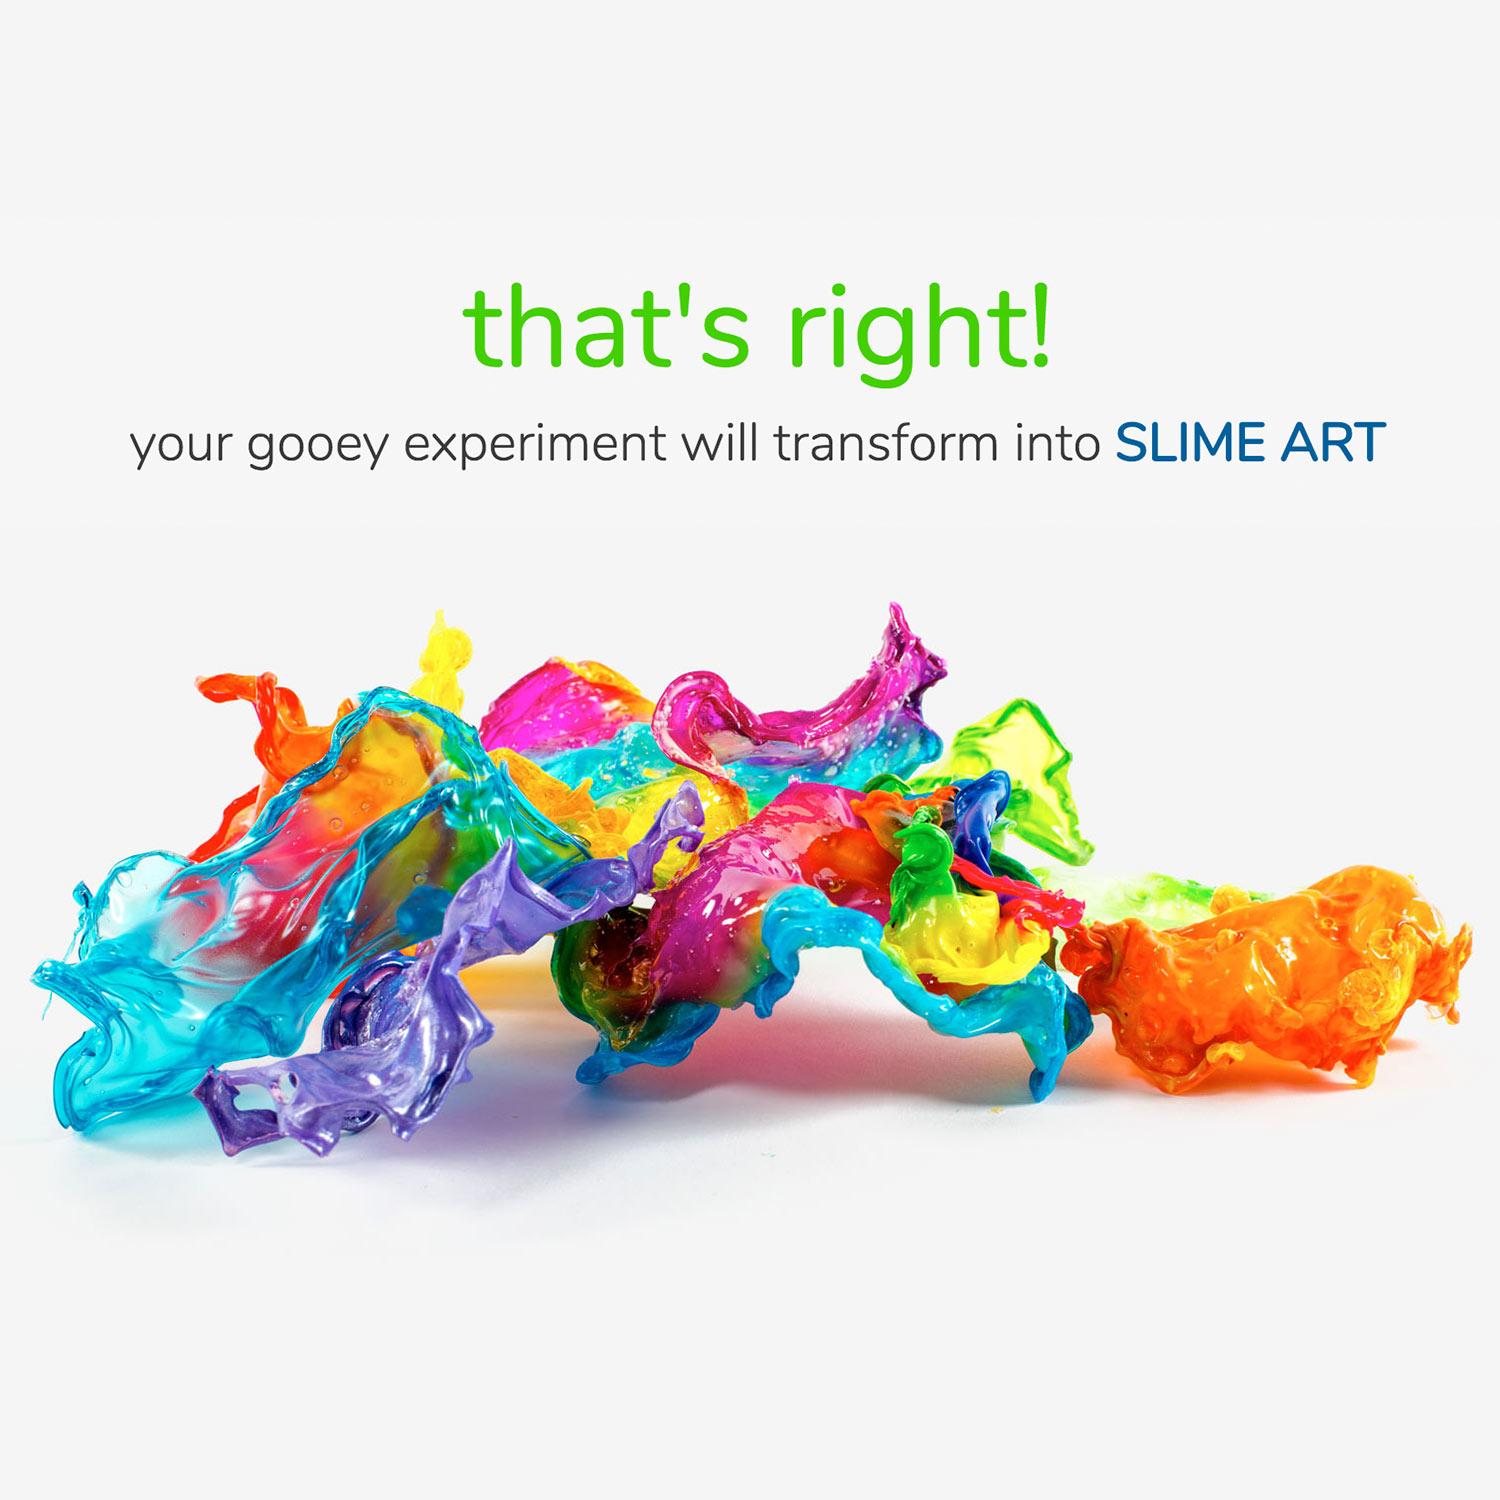 6 Weeks of Slime - Steve Spangler Science